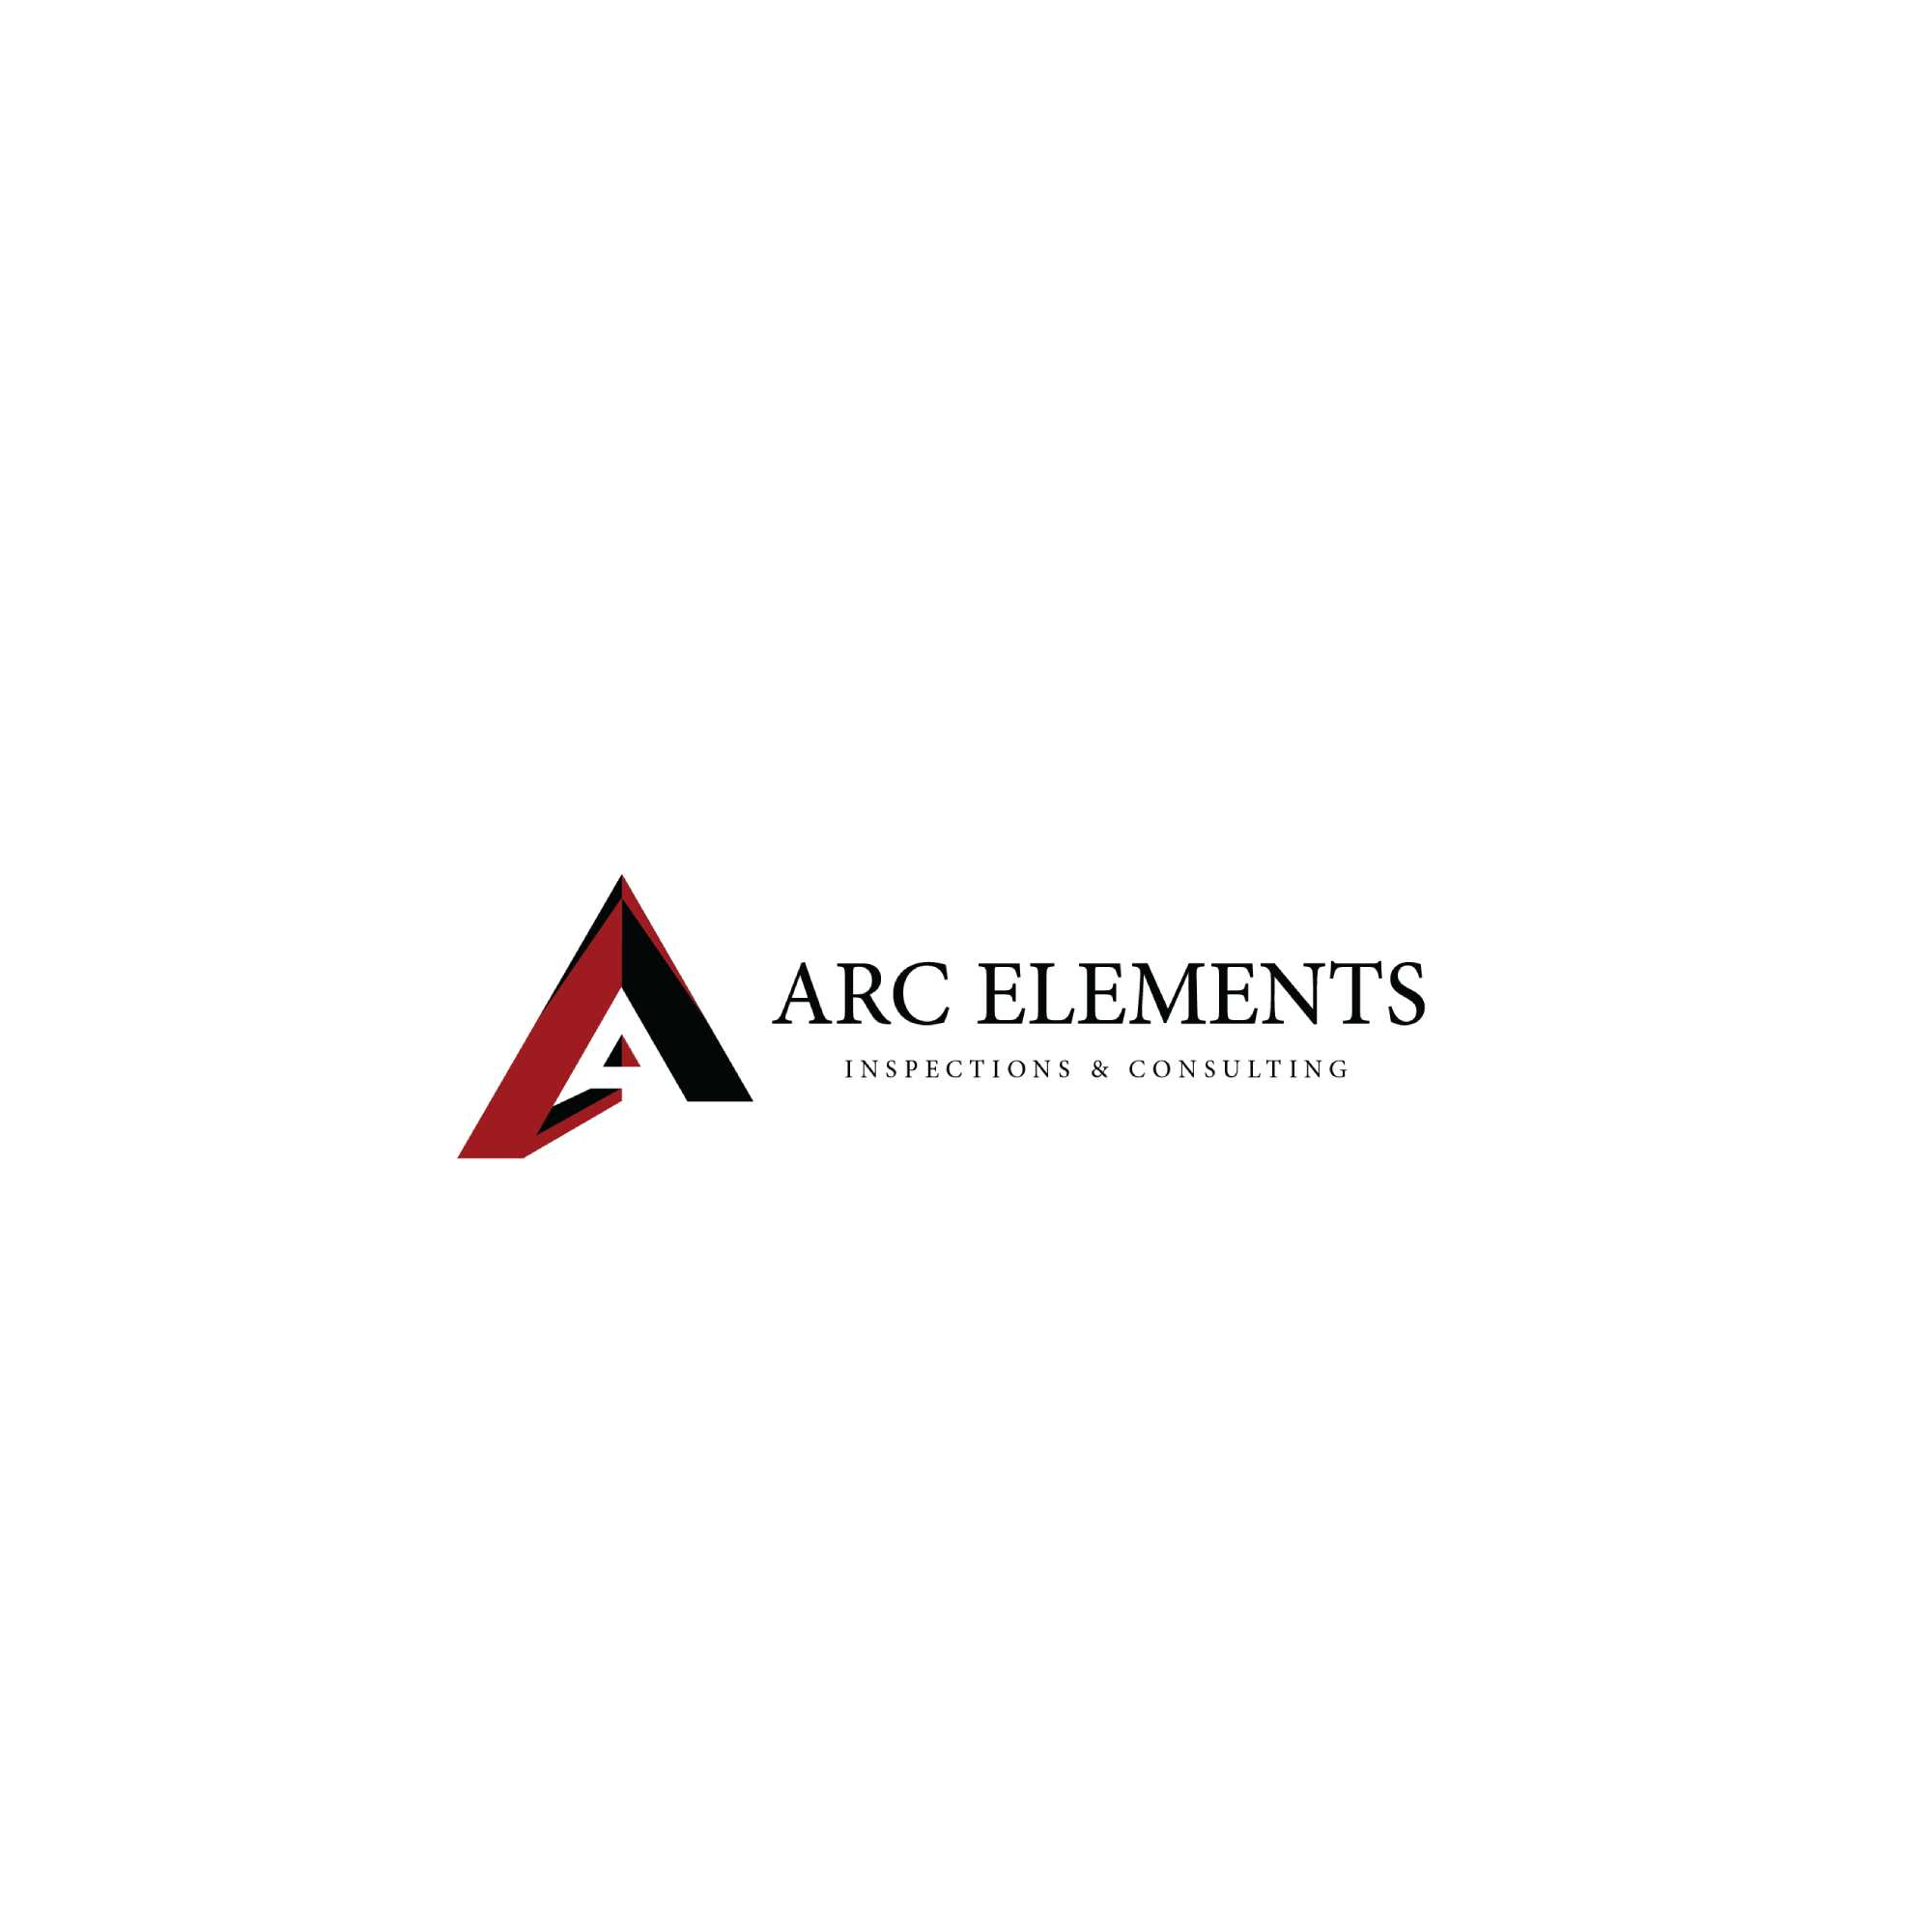 Arc Elements